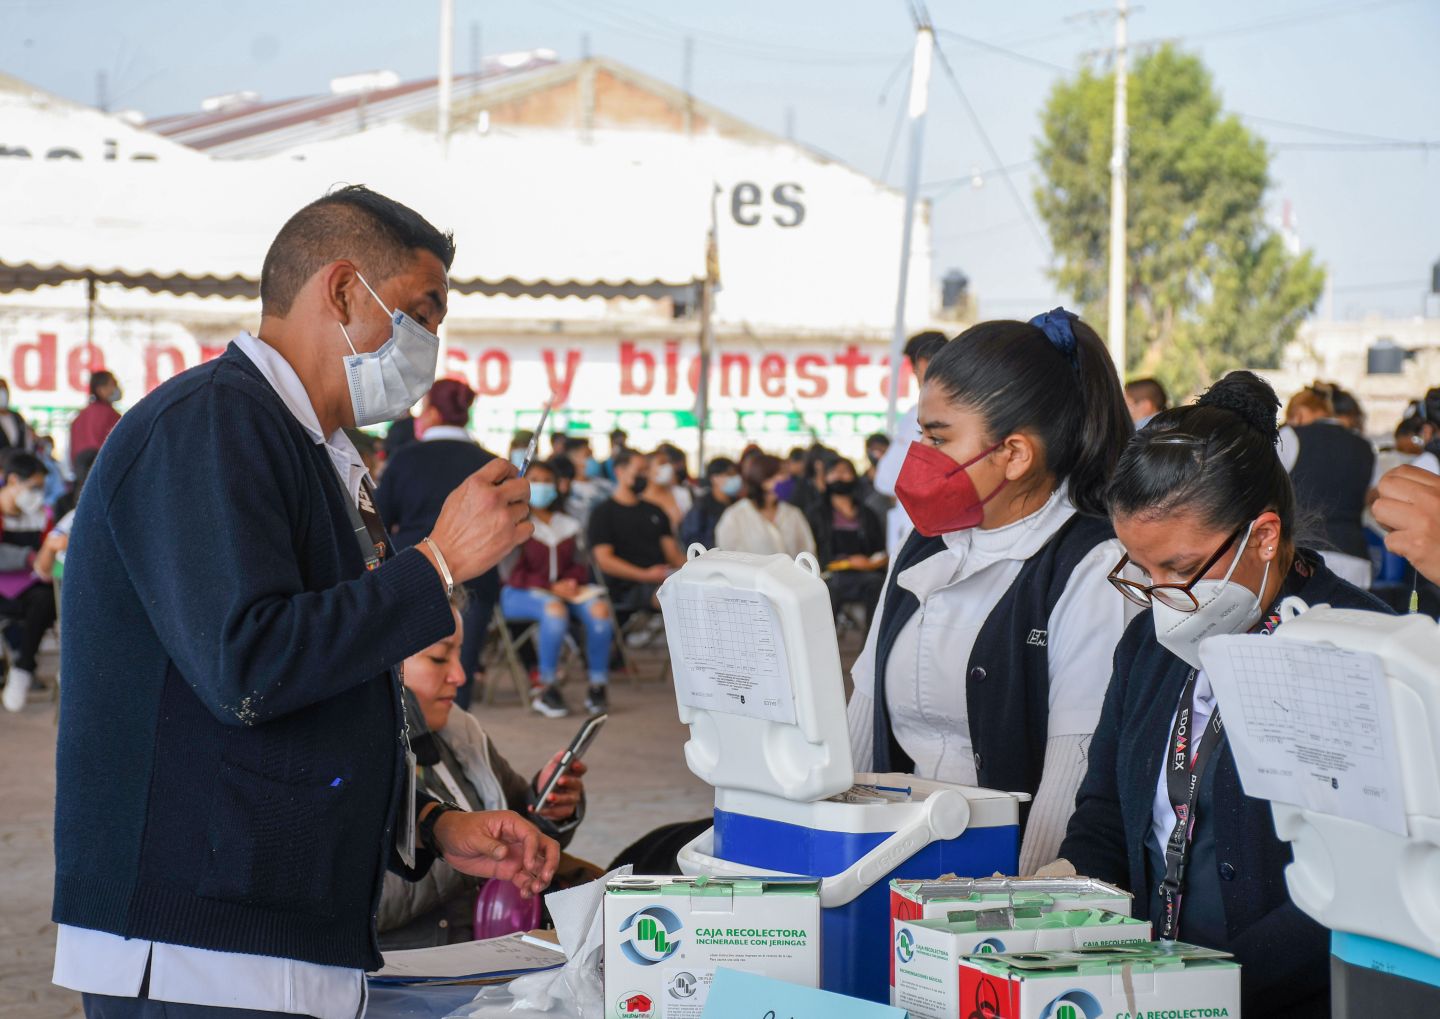 
Inicia vacunación contra COVID-19 para jóvenes de 15 a 17 años de edad sin comorbilidades en Chimalhuacan
